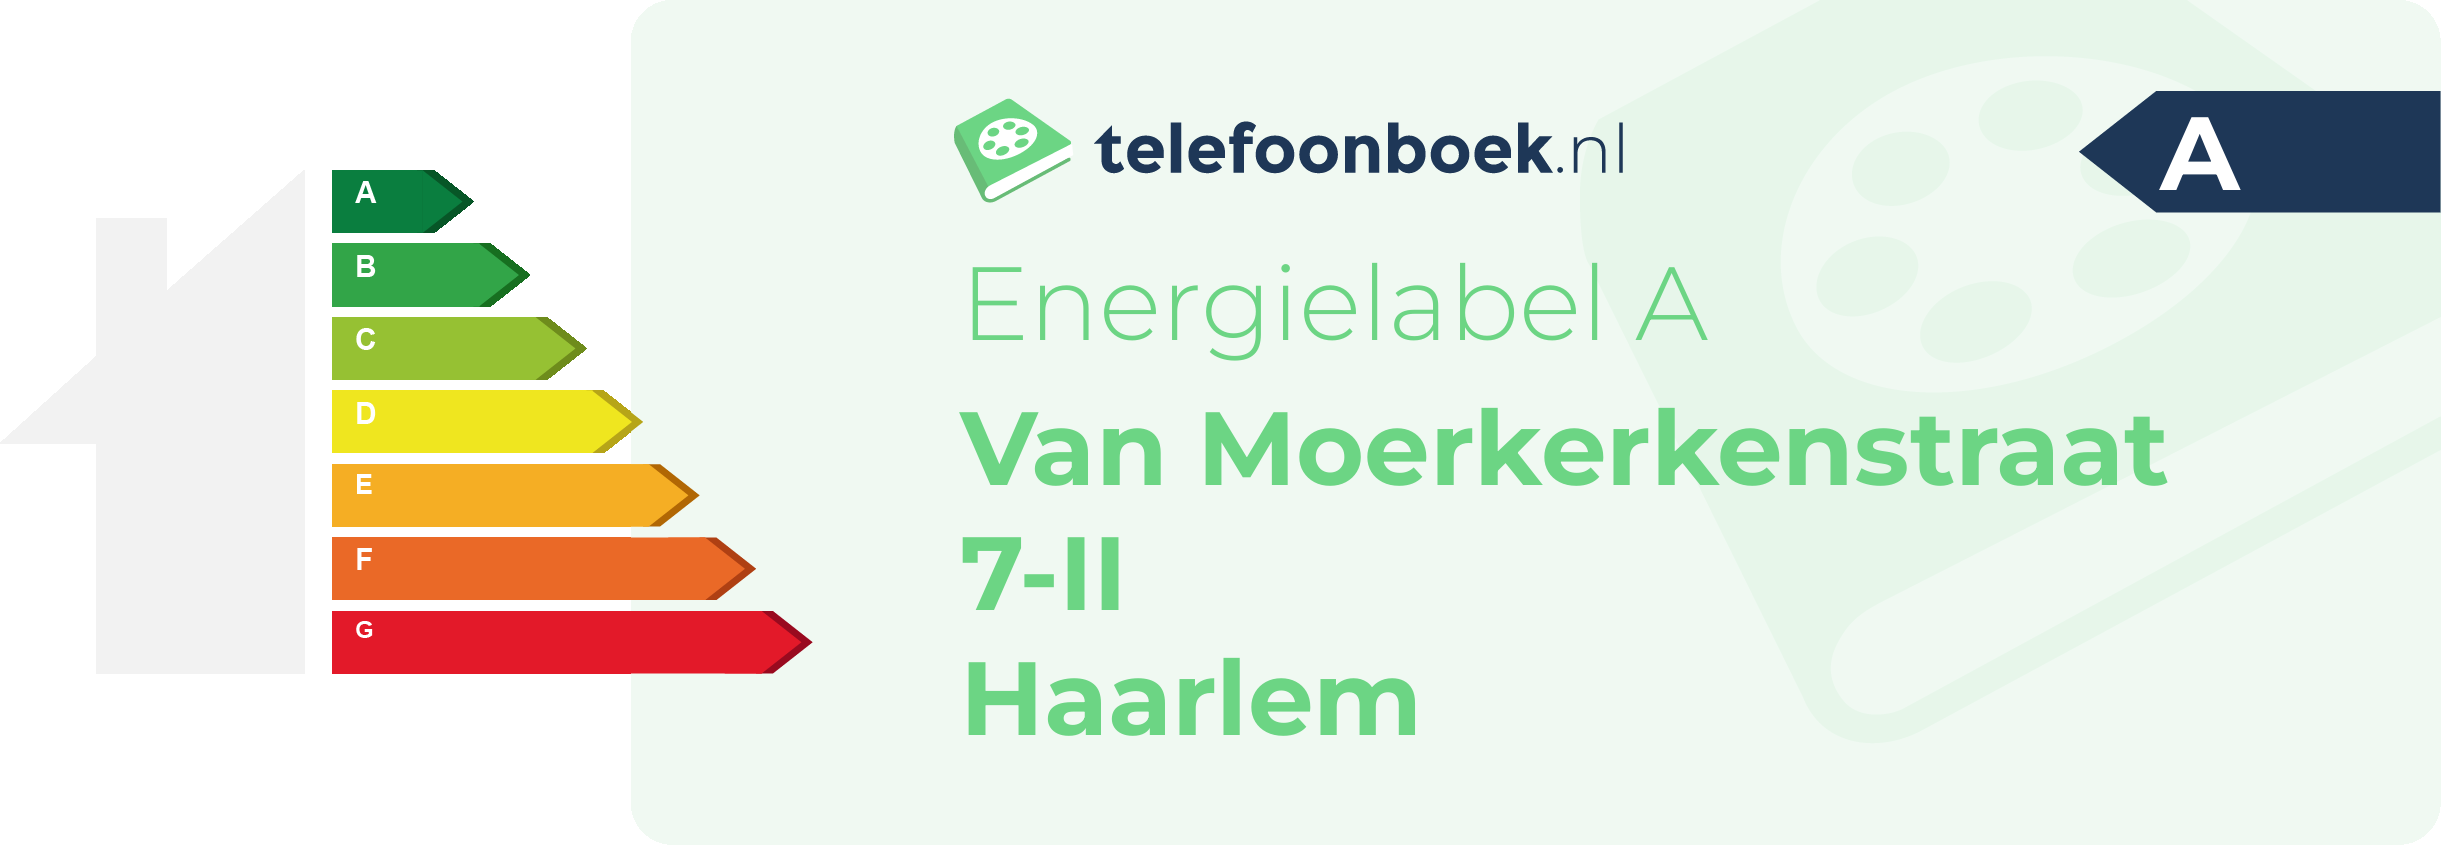 Energielabel Van Moerkerkenstraat 7-II Haarlem